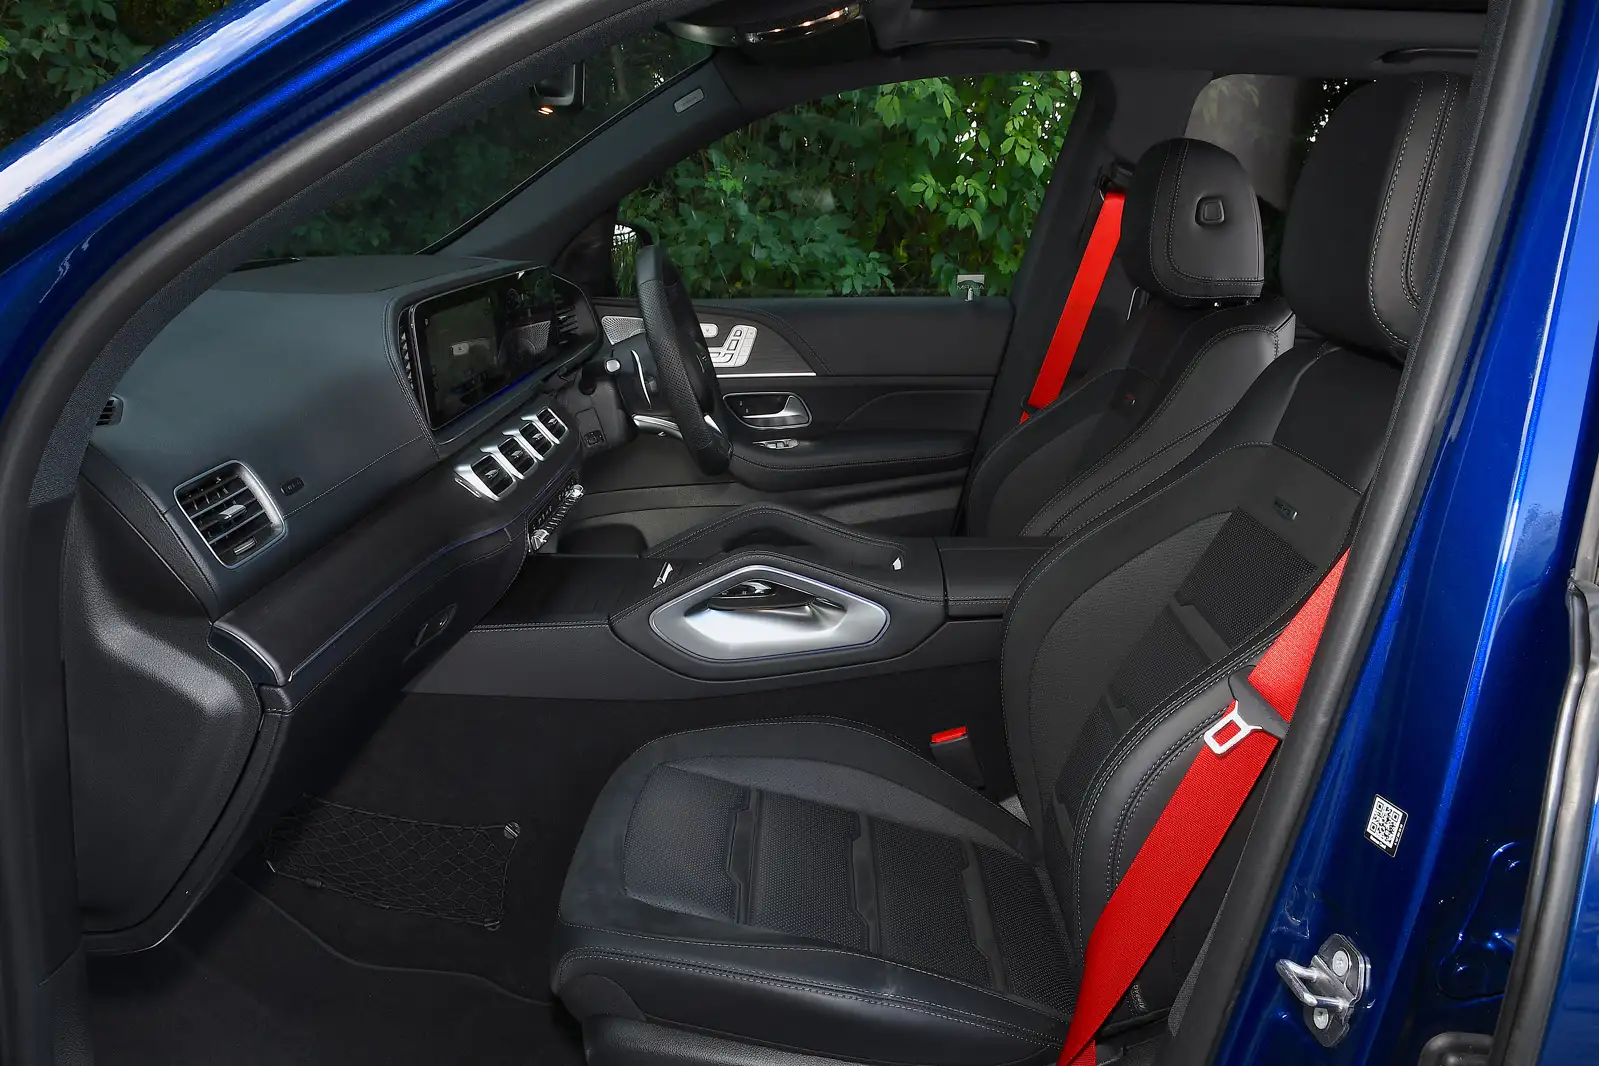 Mercedes-Benz GLE 63 interior - Seats